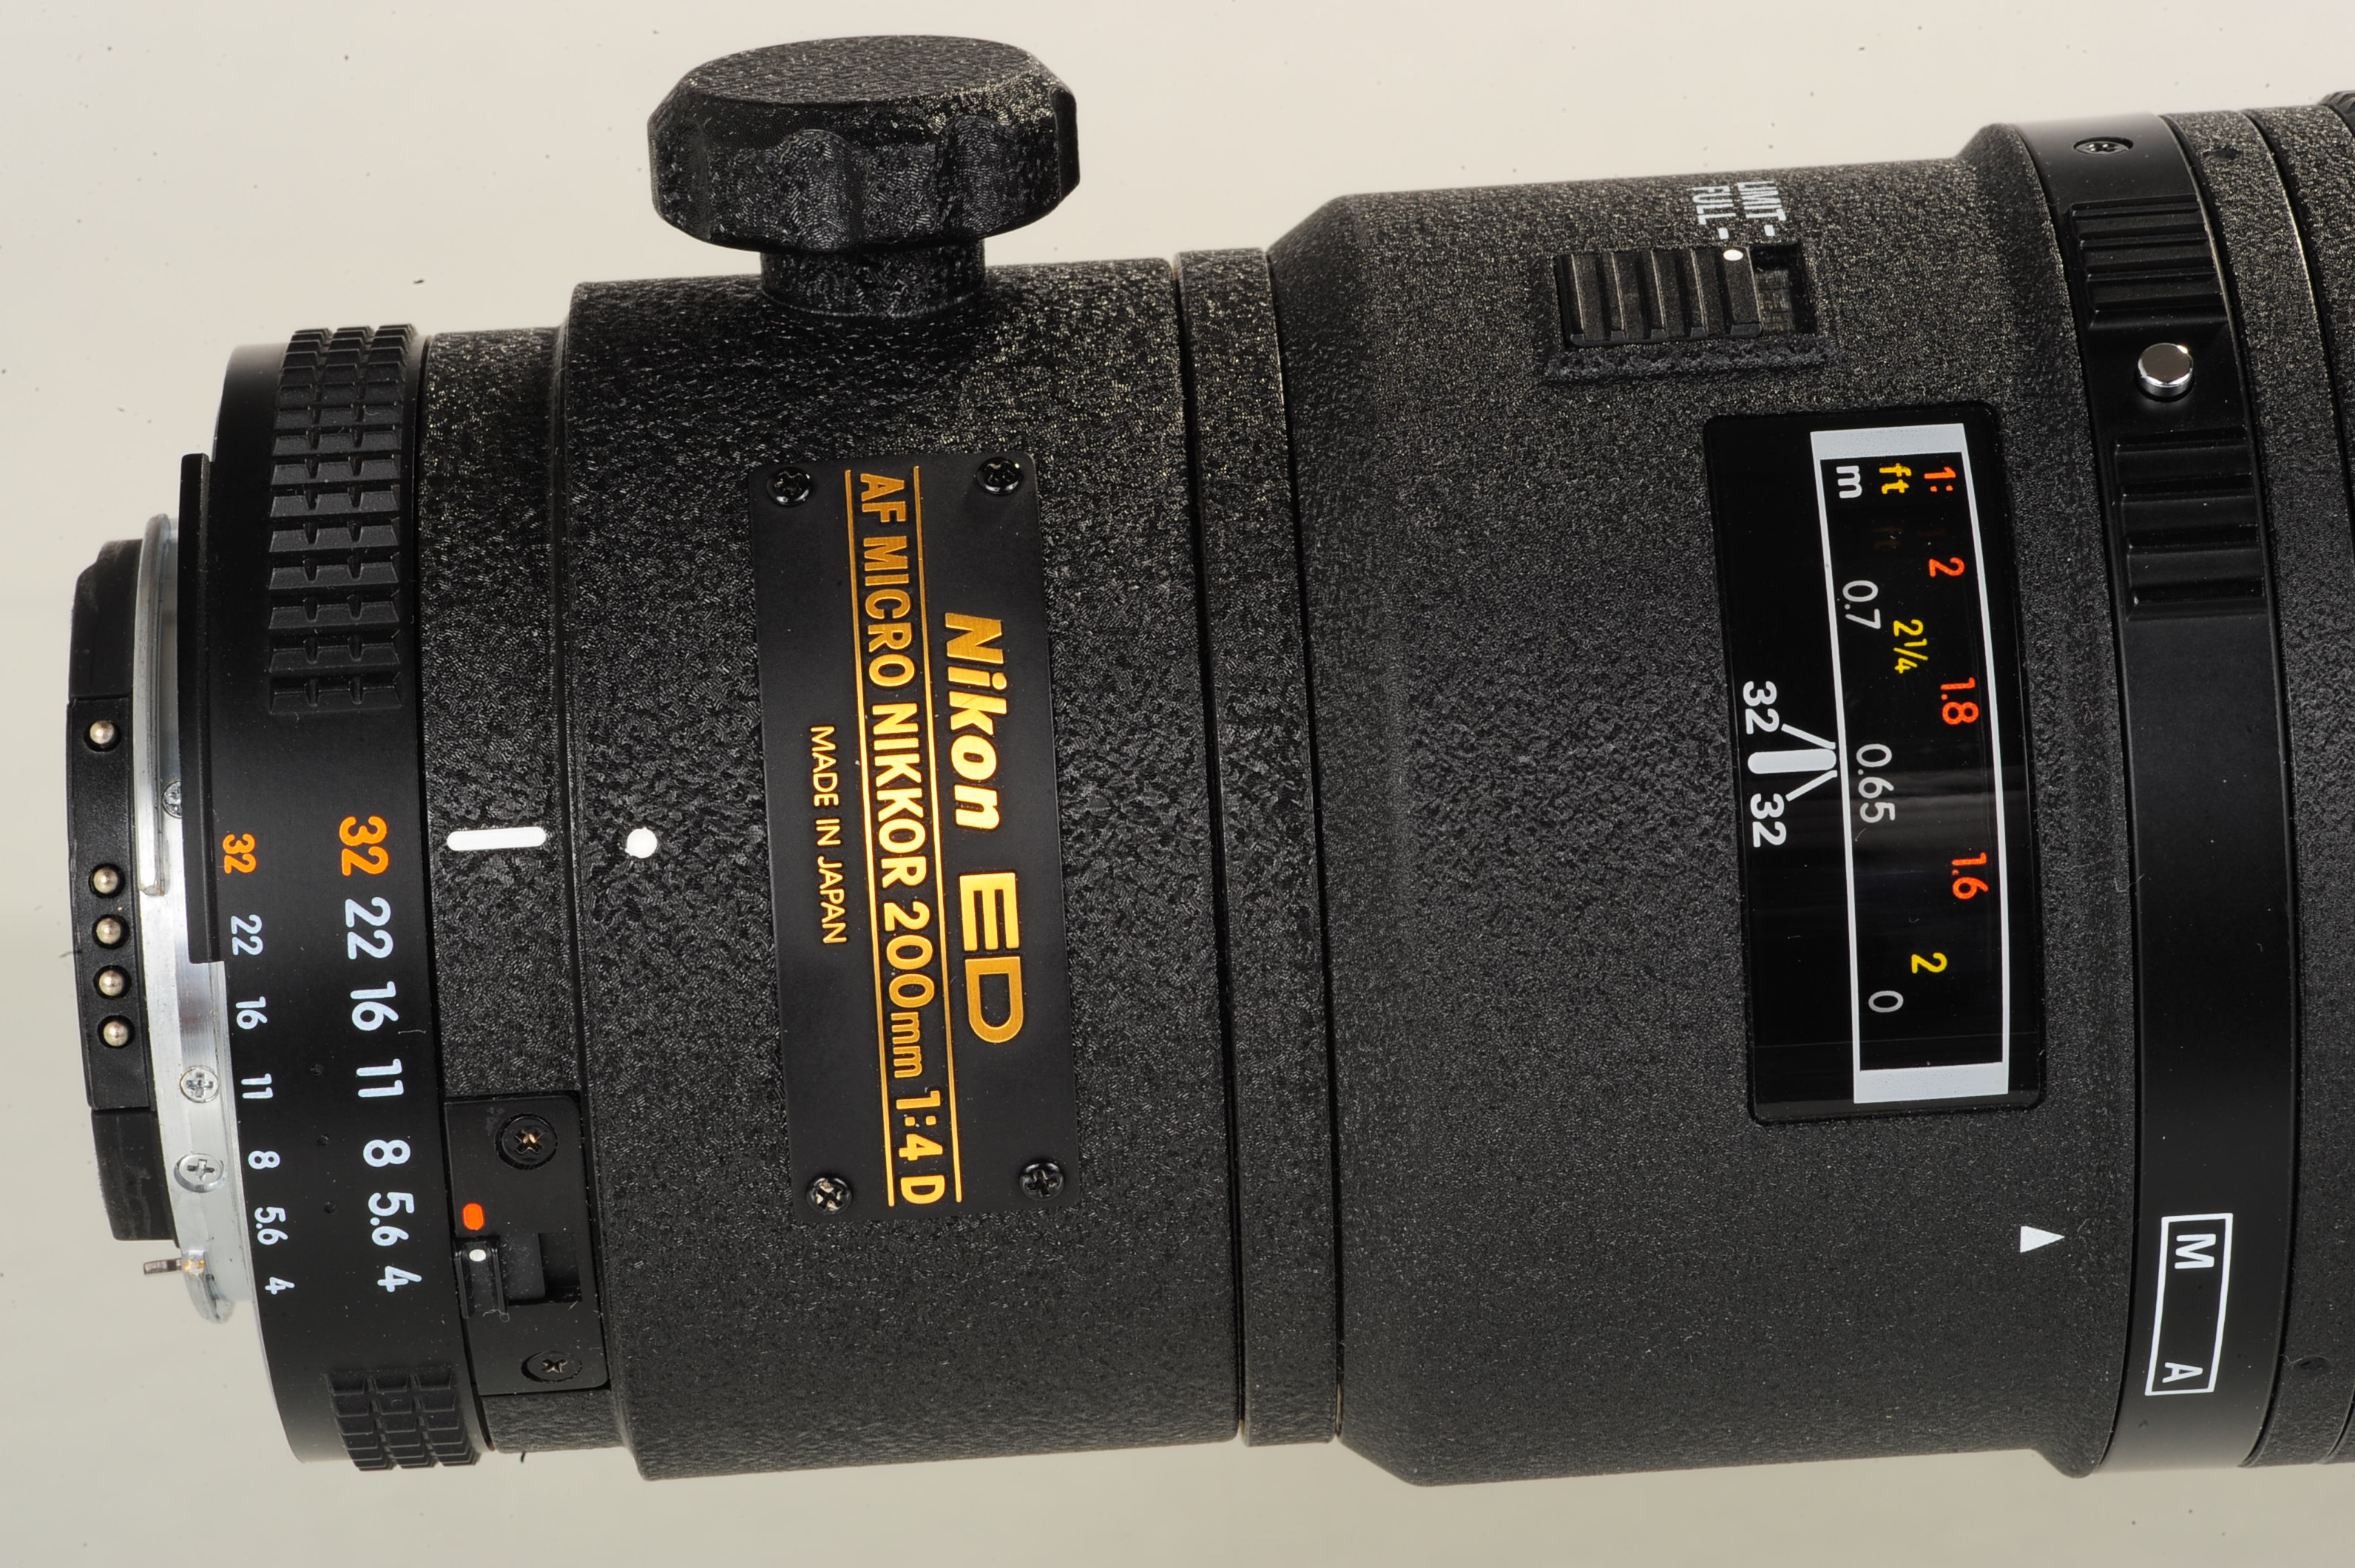 カメラ レンズ(単焦点) Tokina 100mm f/2.8 Macro Review